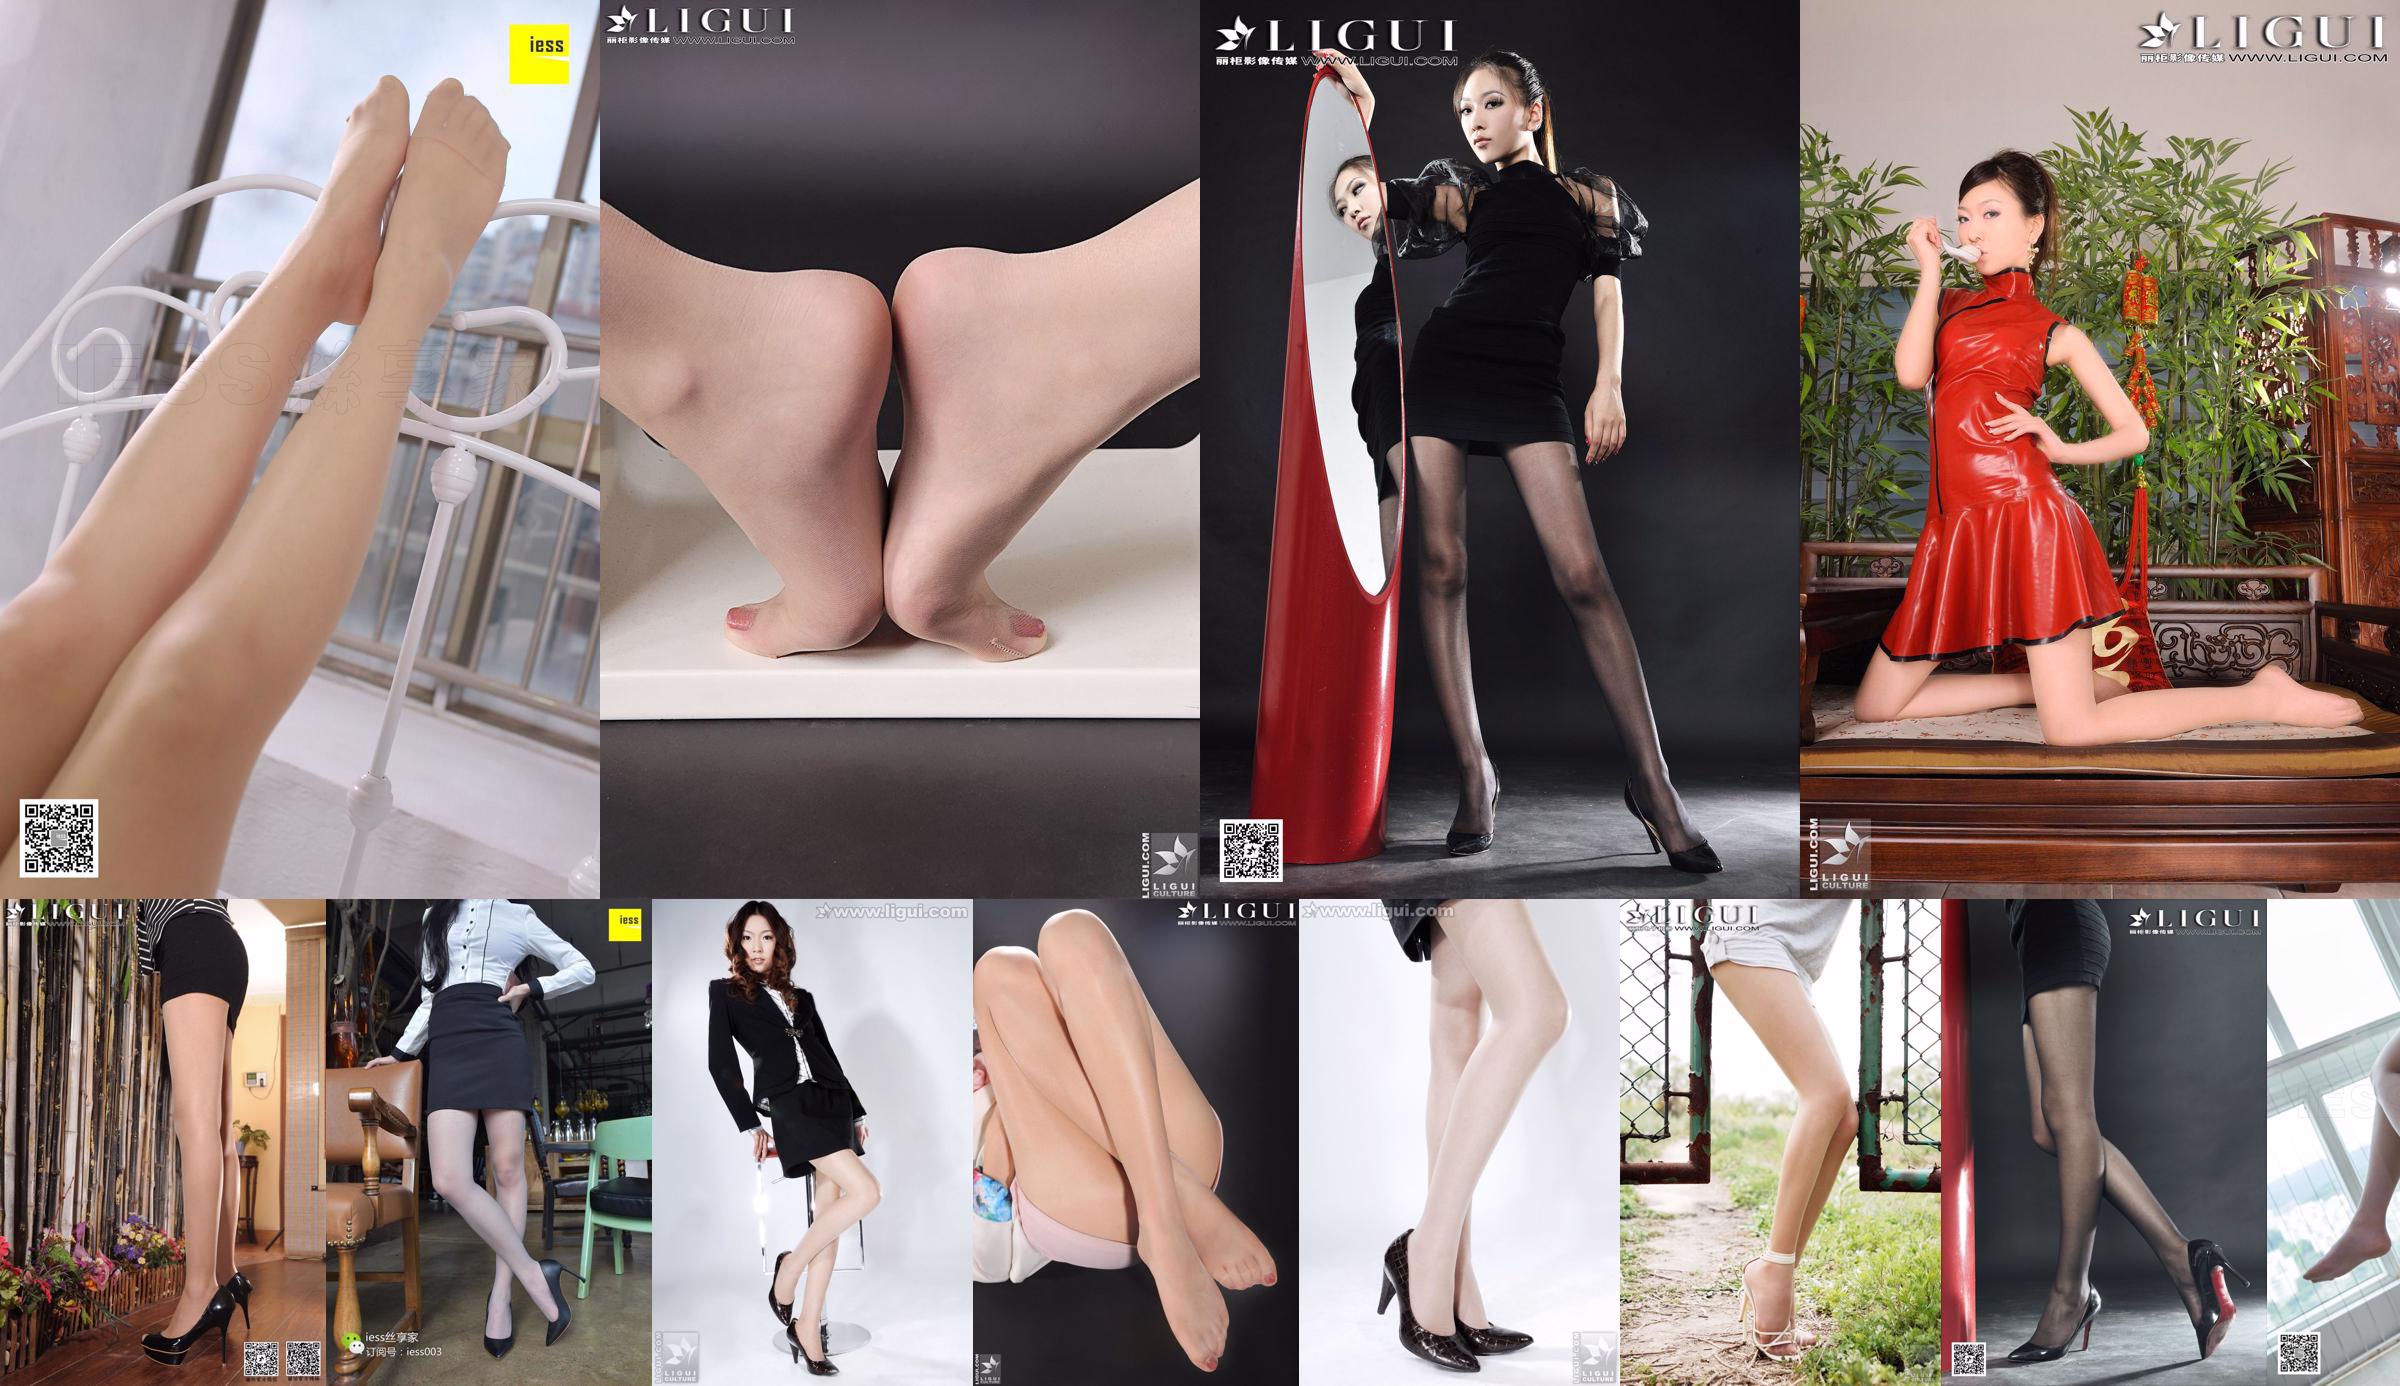 นางแบบ Wenxin "ผ้าขนหนูอาบน้ำไร้เดียงสา + เท้าสวย" [丽柜 LiGui] รูปถ่ายขาและเท้าหยกที่สวยงาม No.c94edc หน้า 1